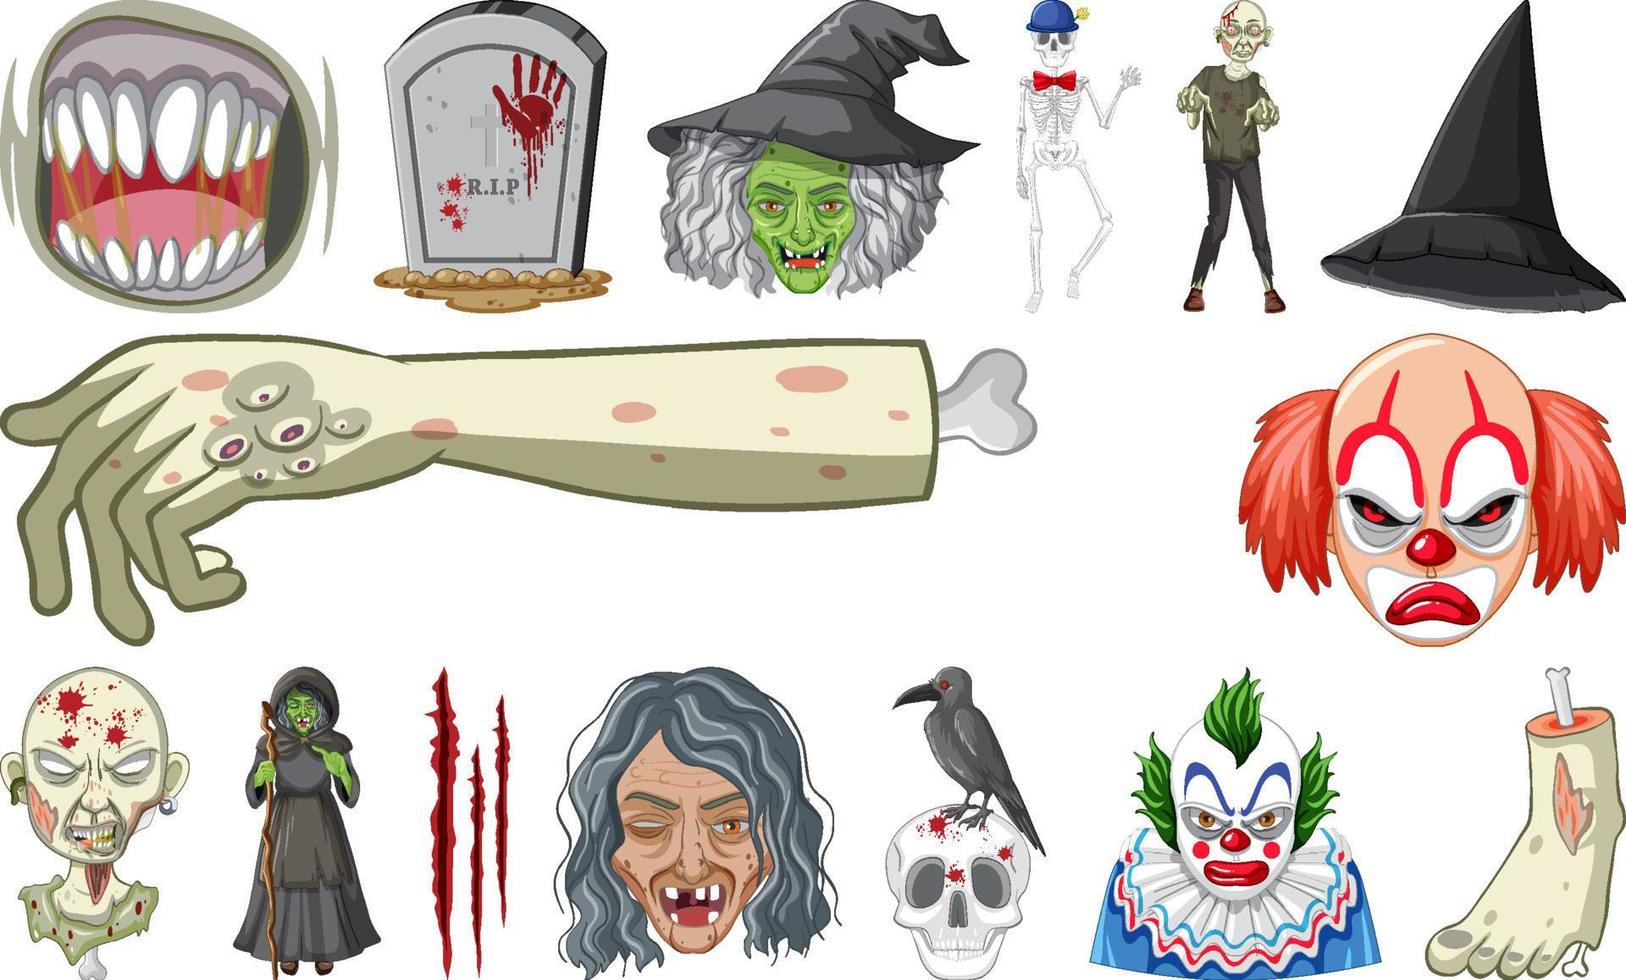 Reihe von Horror-Halloween-Objekten und Zeichentrickfiguren vektor